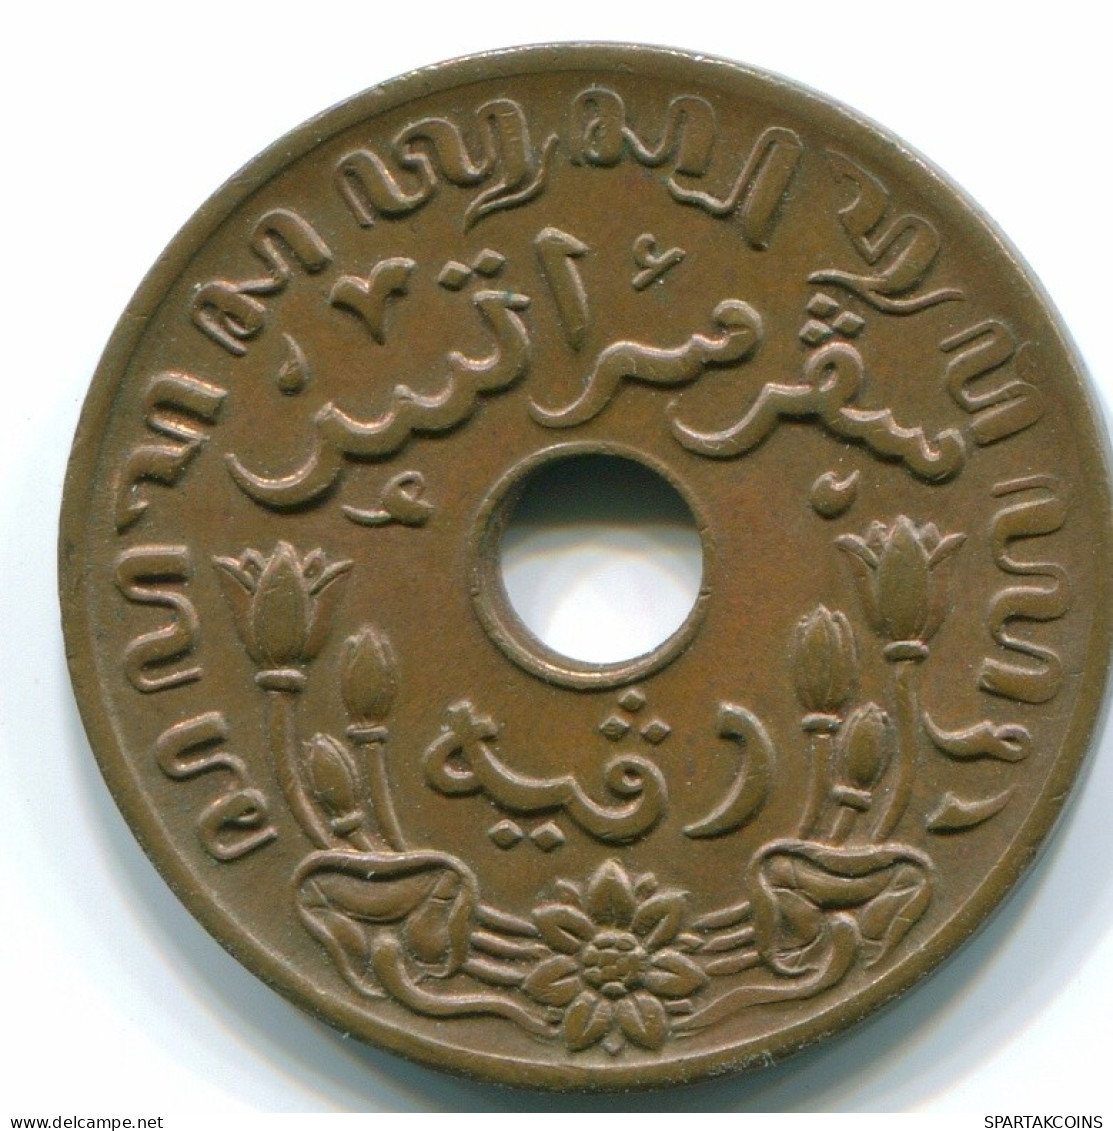 1 CENT 1945 P INDES ORIENTALES NÉERLANDAISES INDONÉSIE INDONESIA Bronze Colonial Pièce #S10444.F.A - Nederlands-Indië